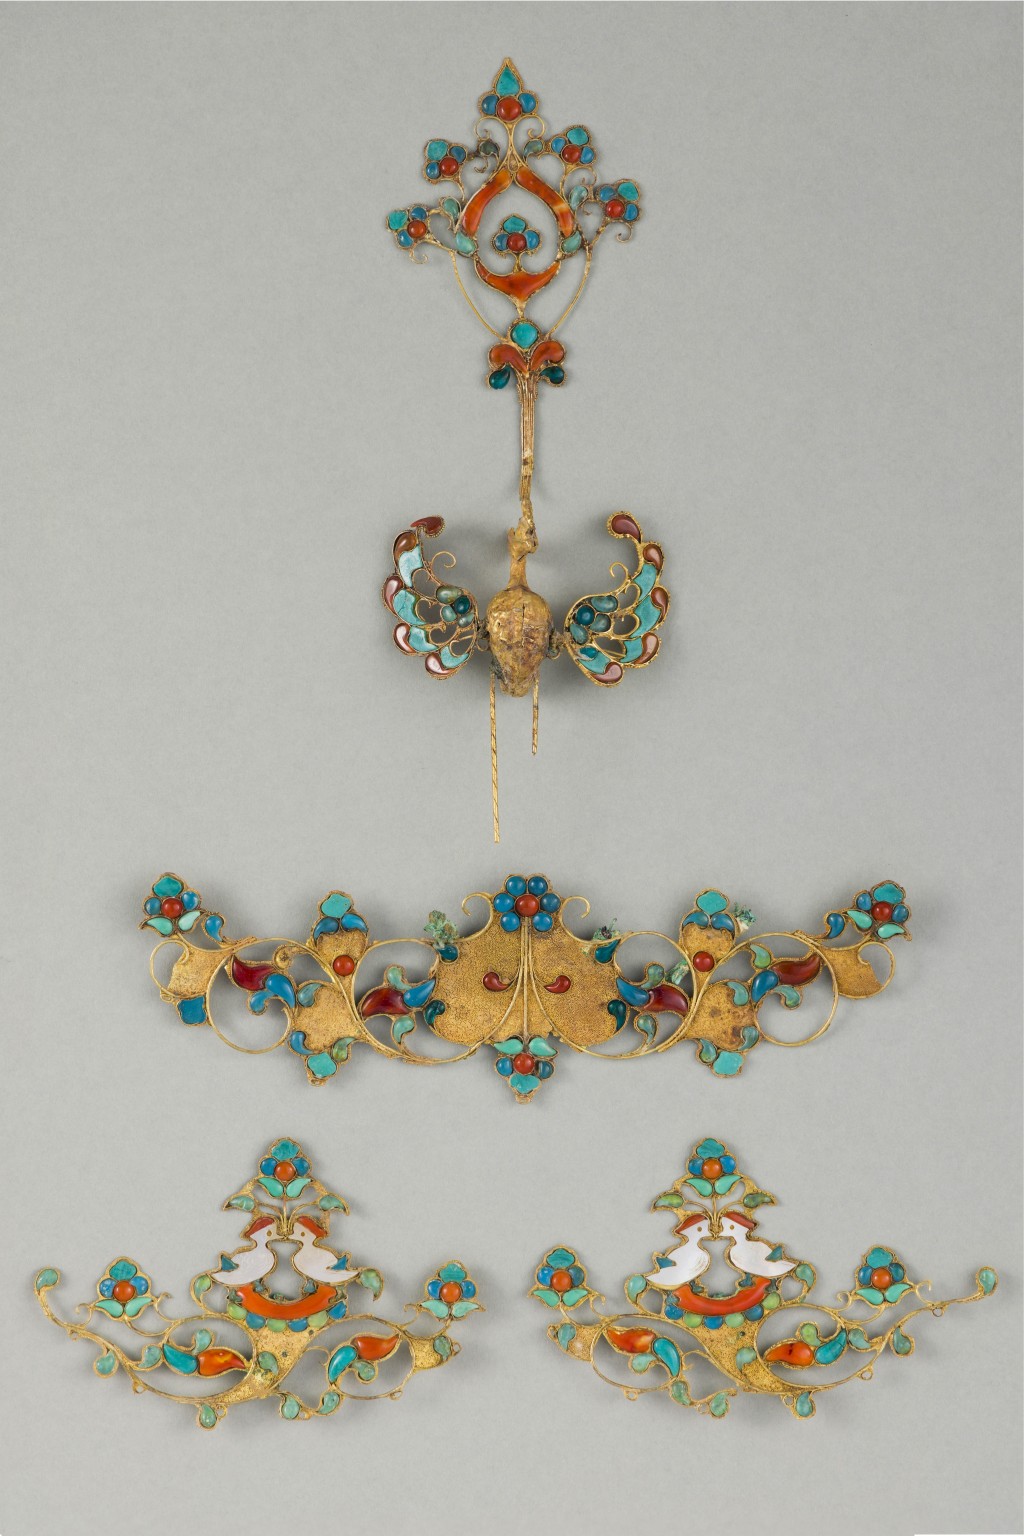 展品「鳳及鴛鴦銜花枝紋冠飾」。香港故宮文化博物館提供圖片